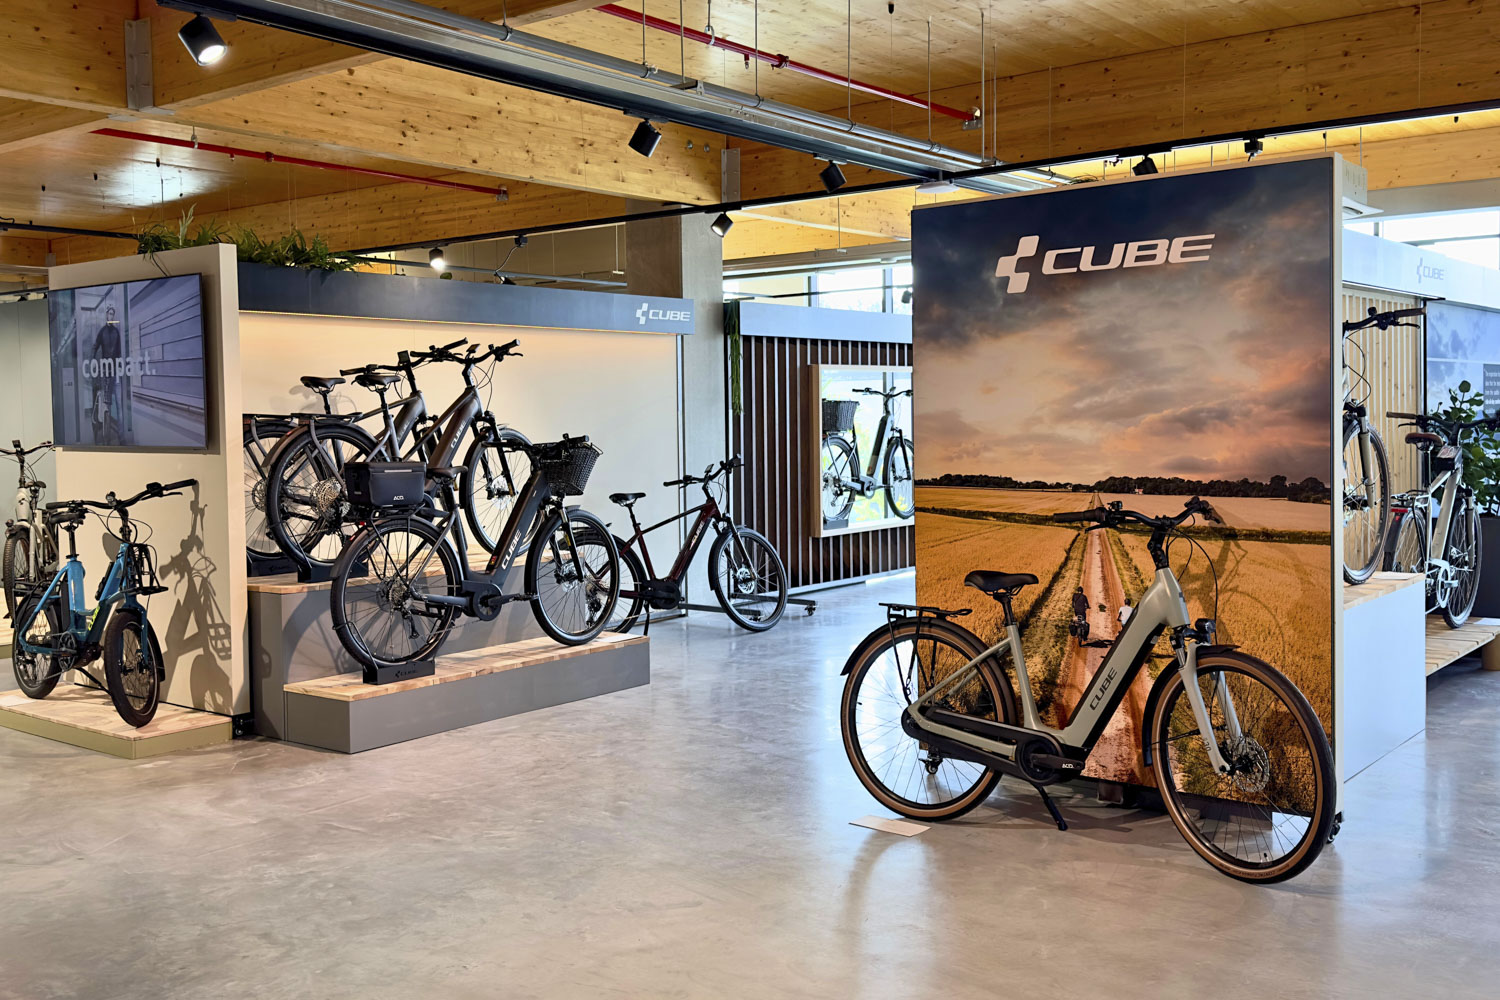 nieuwsfiets-nieuws-oneway-bike-opent-nieuwe-cube-showroom-in-rotterdam